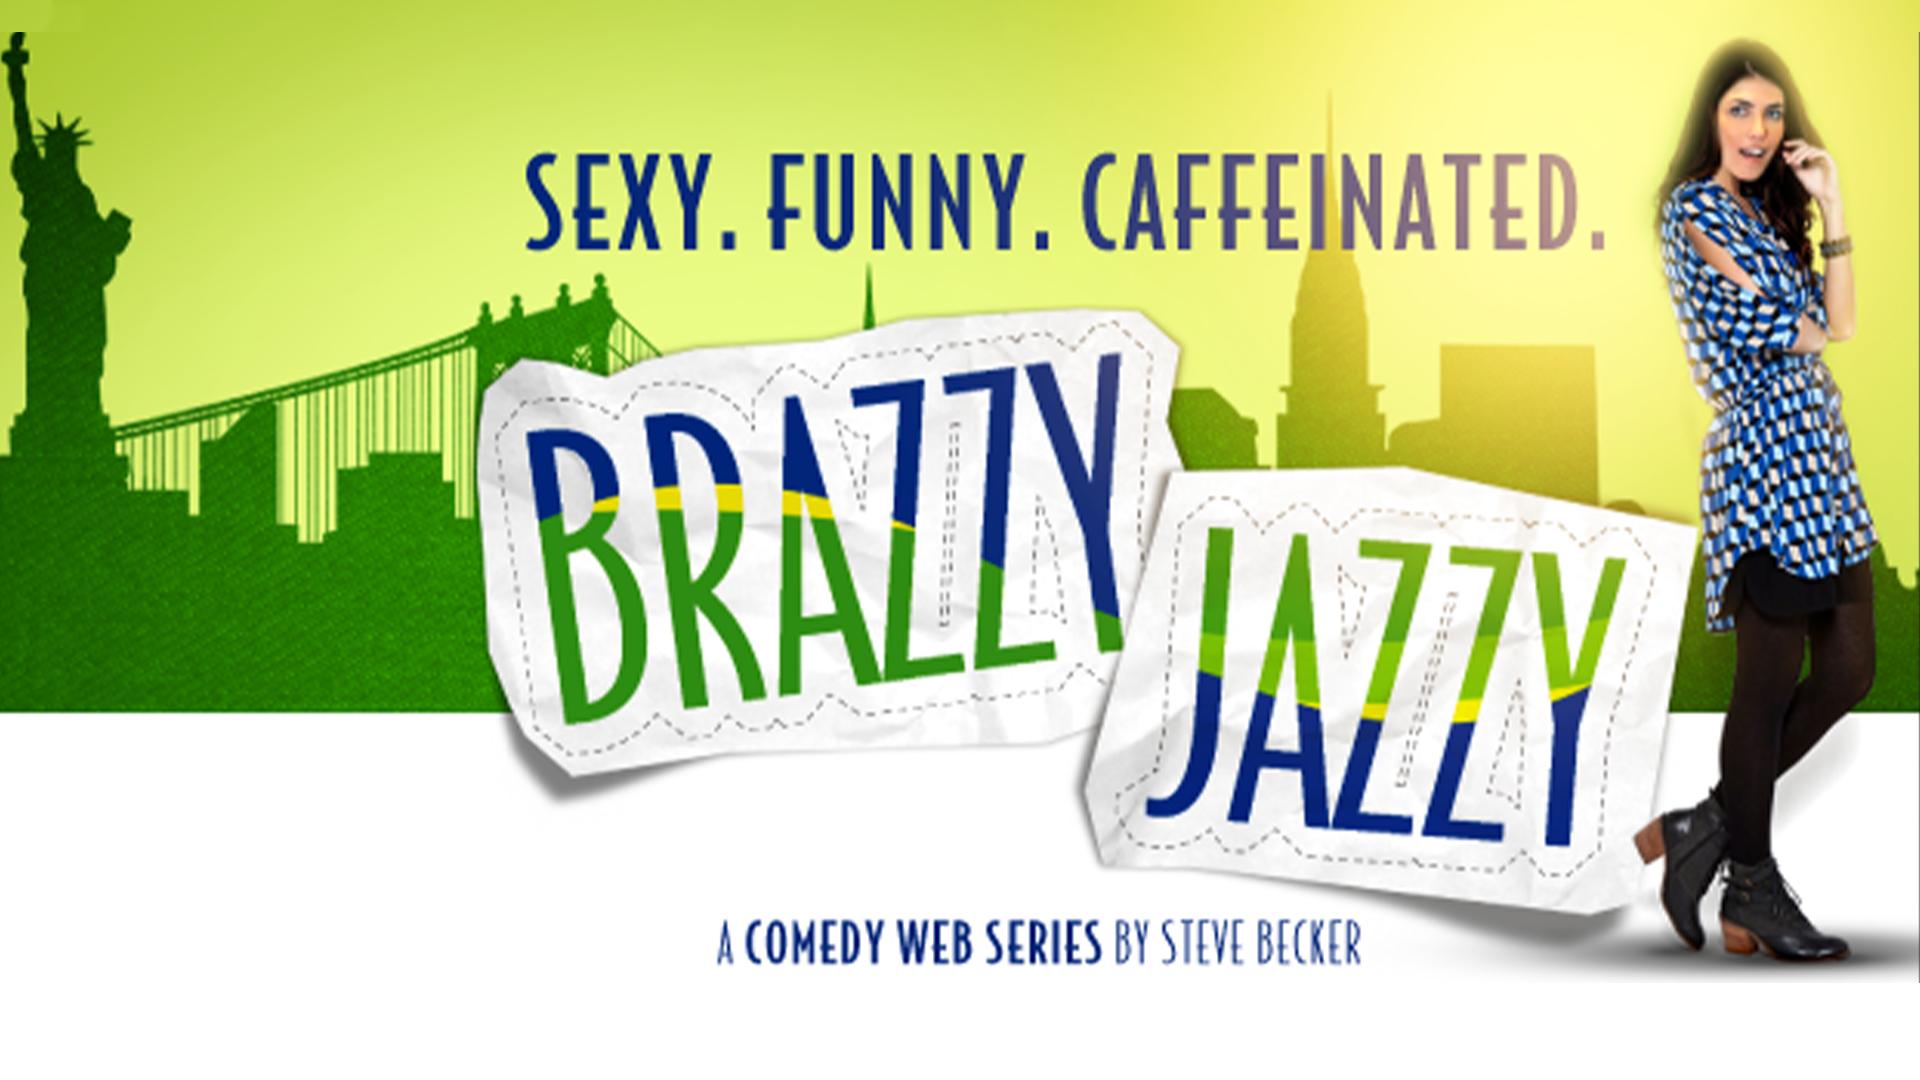 Brazzy Jazzy - Season 2